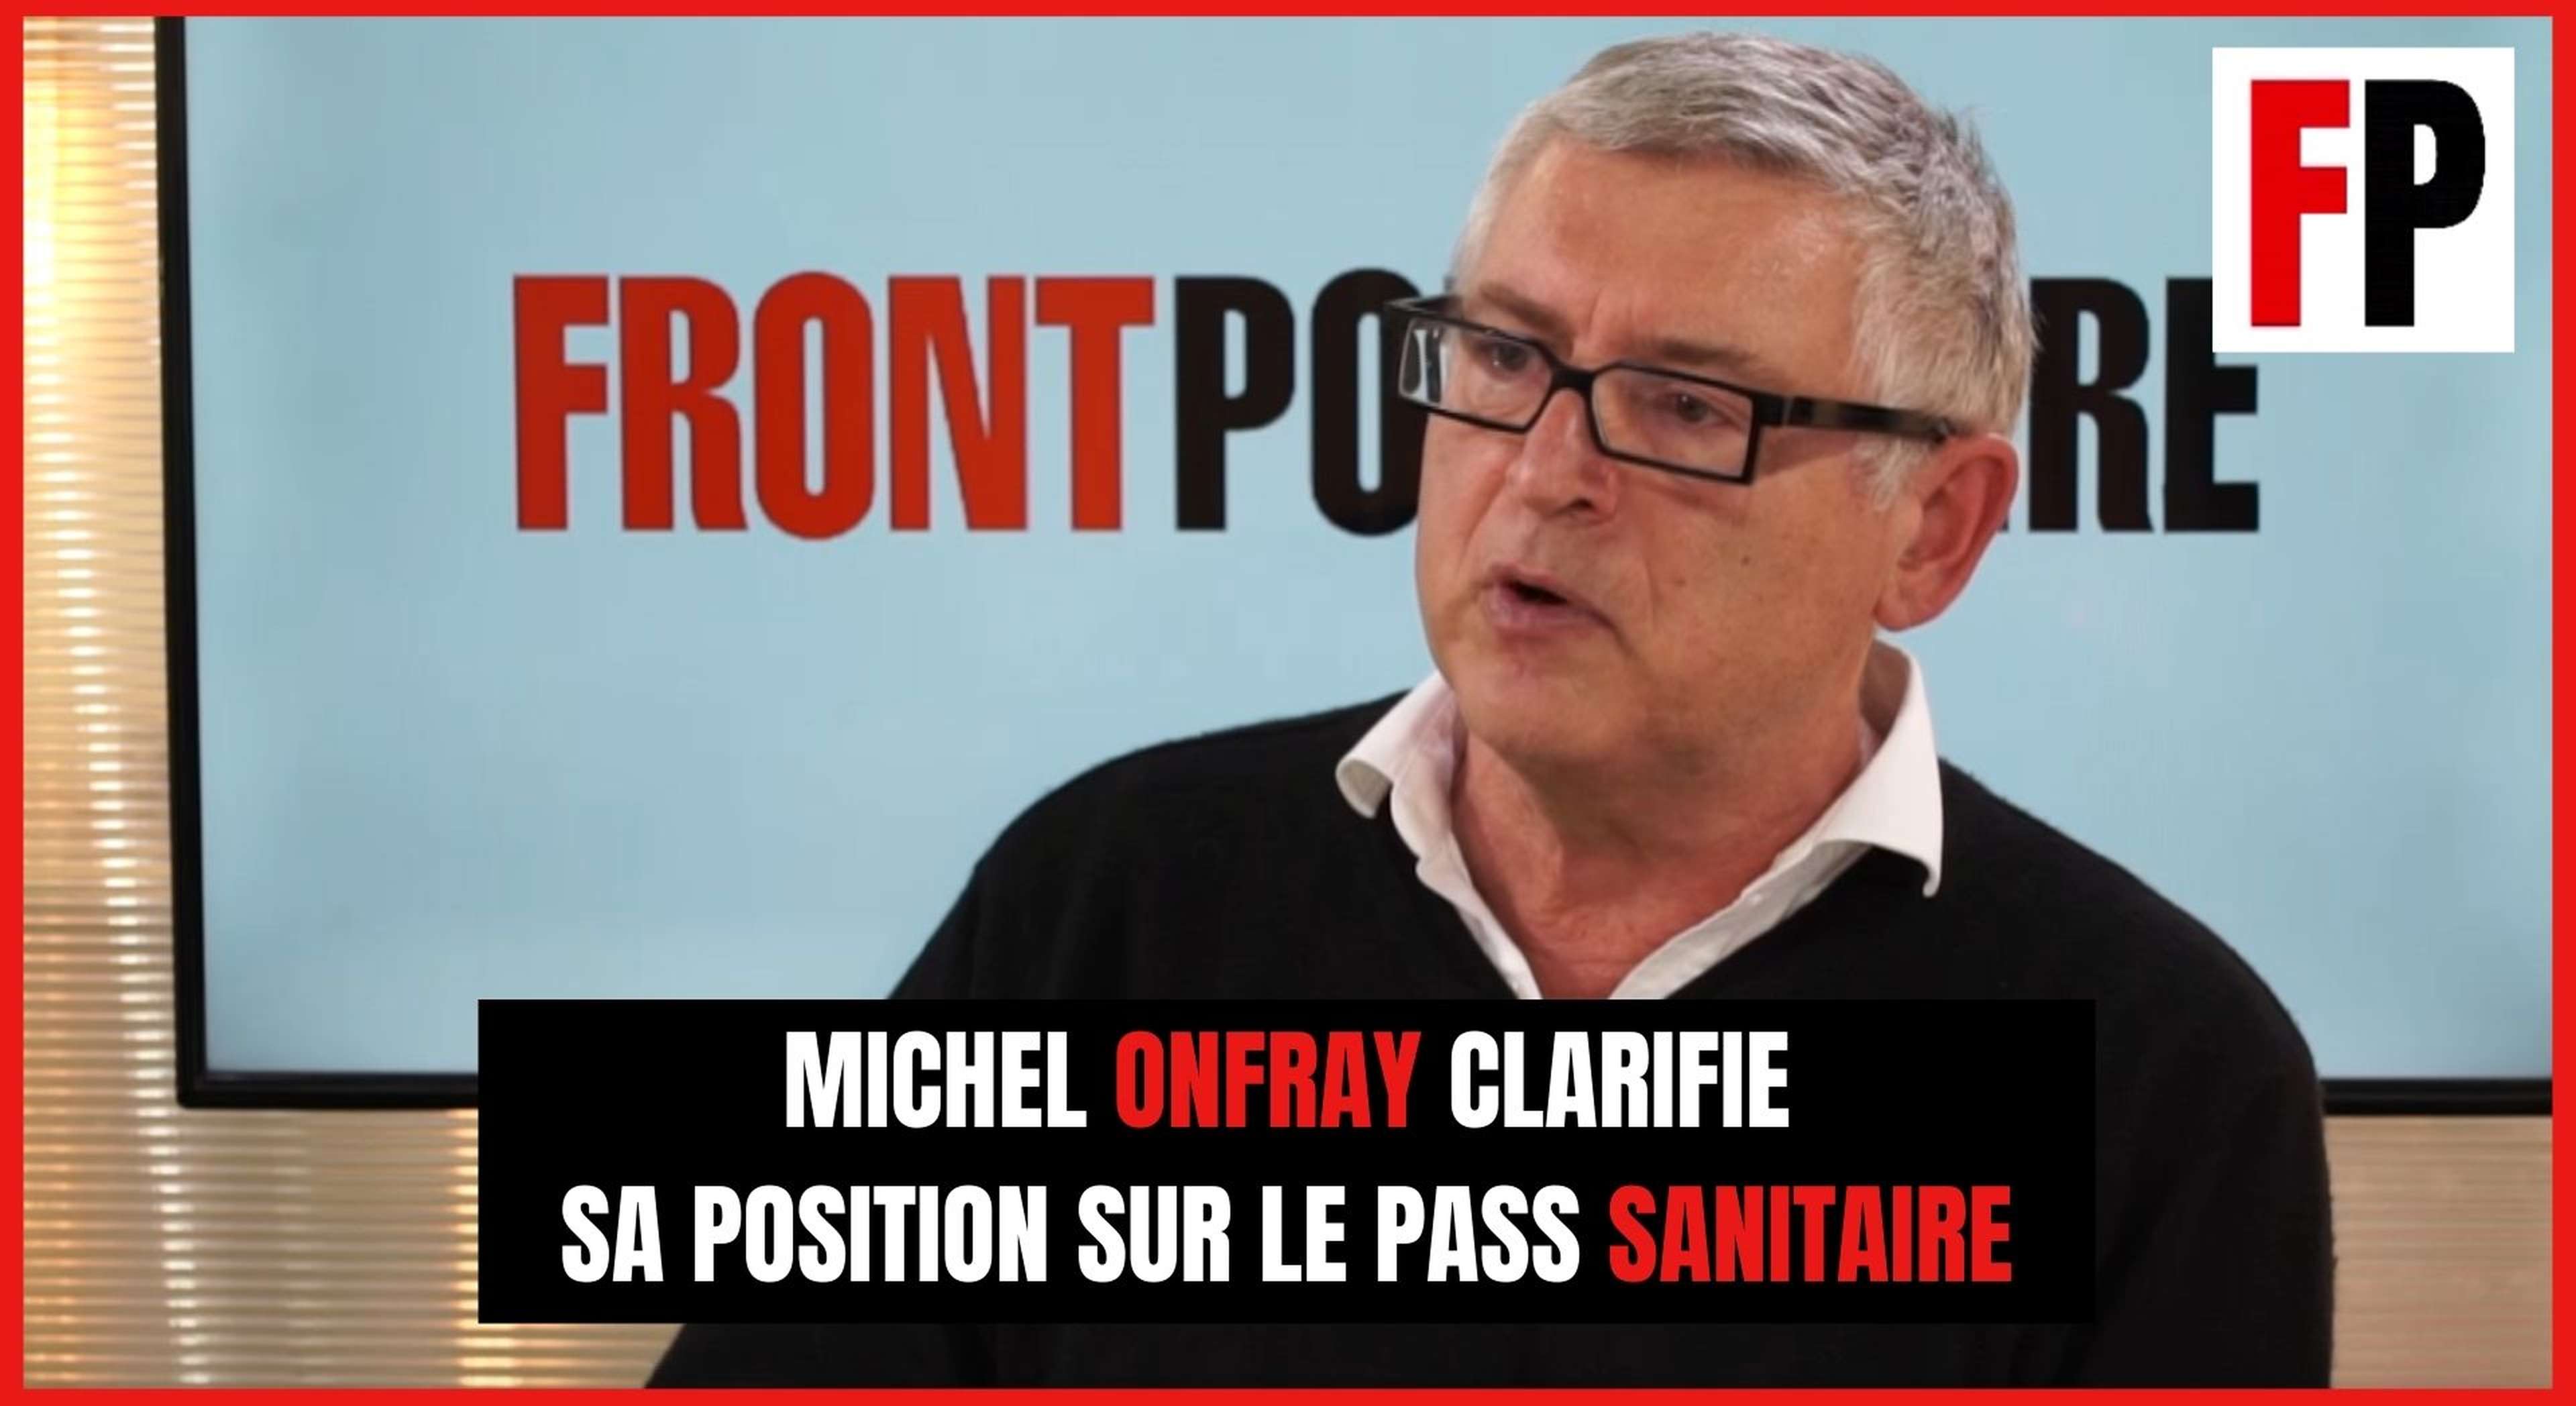 Michel Onfray clarifie sa position sur le pass sanitaire